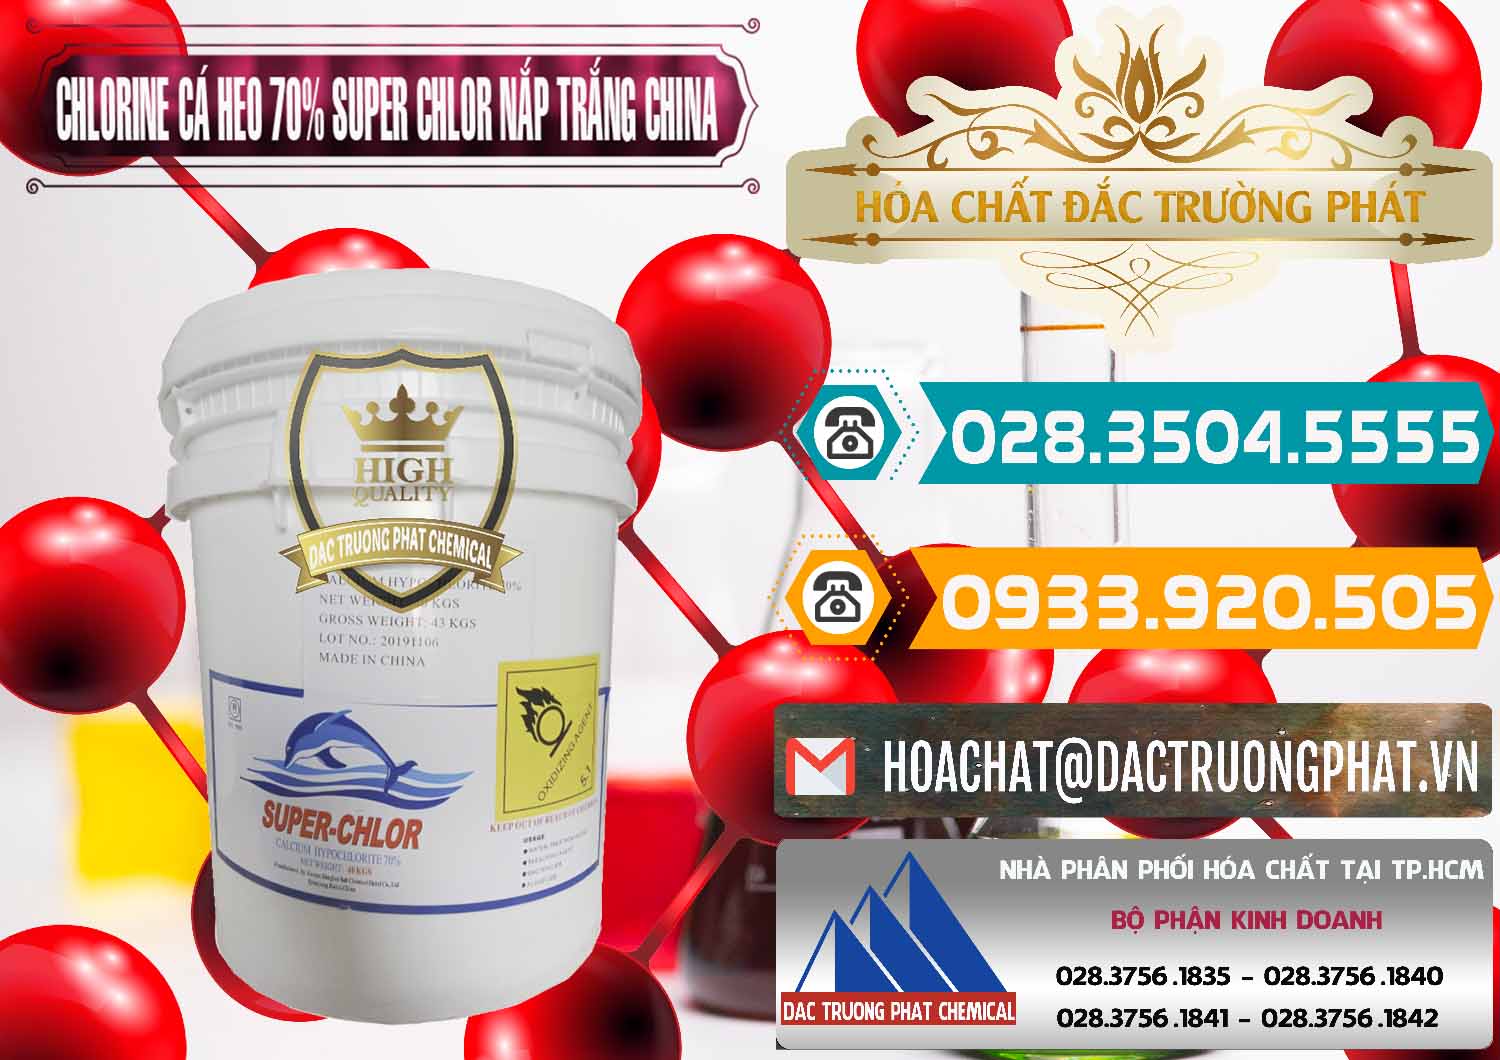 Đơn vị chuyên bán và phân phối Clorin - Chlorine Cá Heo 70% Super Chlor Nắp Trắng Trung Quốc China - 0240 - Nhà phân phối & kinh doanh hóa chất tại TP.HCM - congtyhoachat.vn